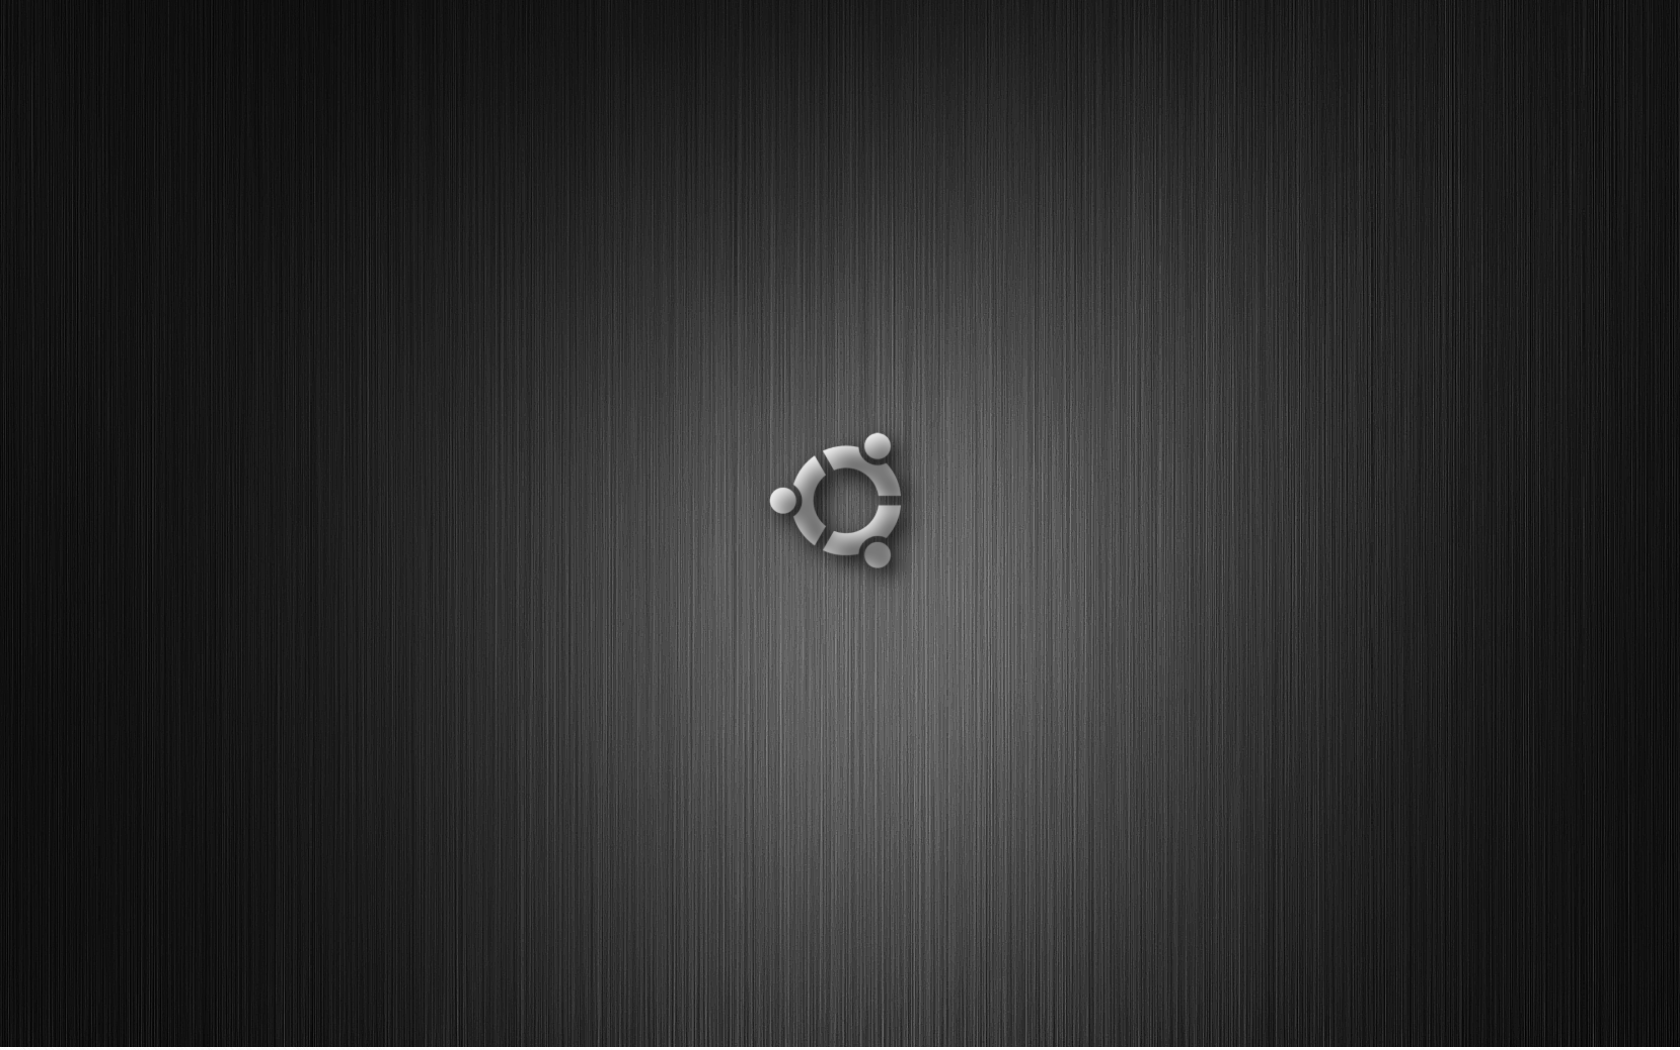 Hình nền desktop Ubuntu màu đen rực rỡ đang chờ đón bạn khám phá. Tận hưởng trải nghiệm độc đáo khi sử dụng màn hình máy tính của bạn với hình ảnh được thiết kế tinh tế và đặc sắc. Khám phá ngay và chọn cho mình bức ảnh đẹp nhất để làm nền desktop Ubuntu của bạn.